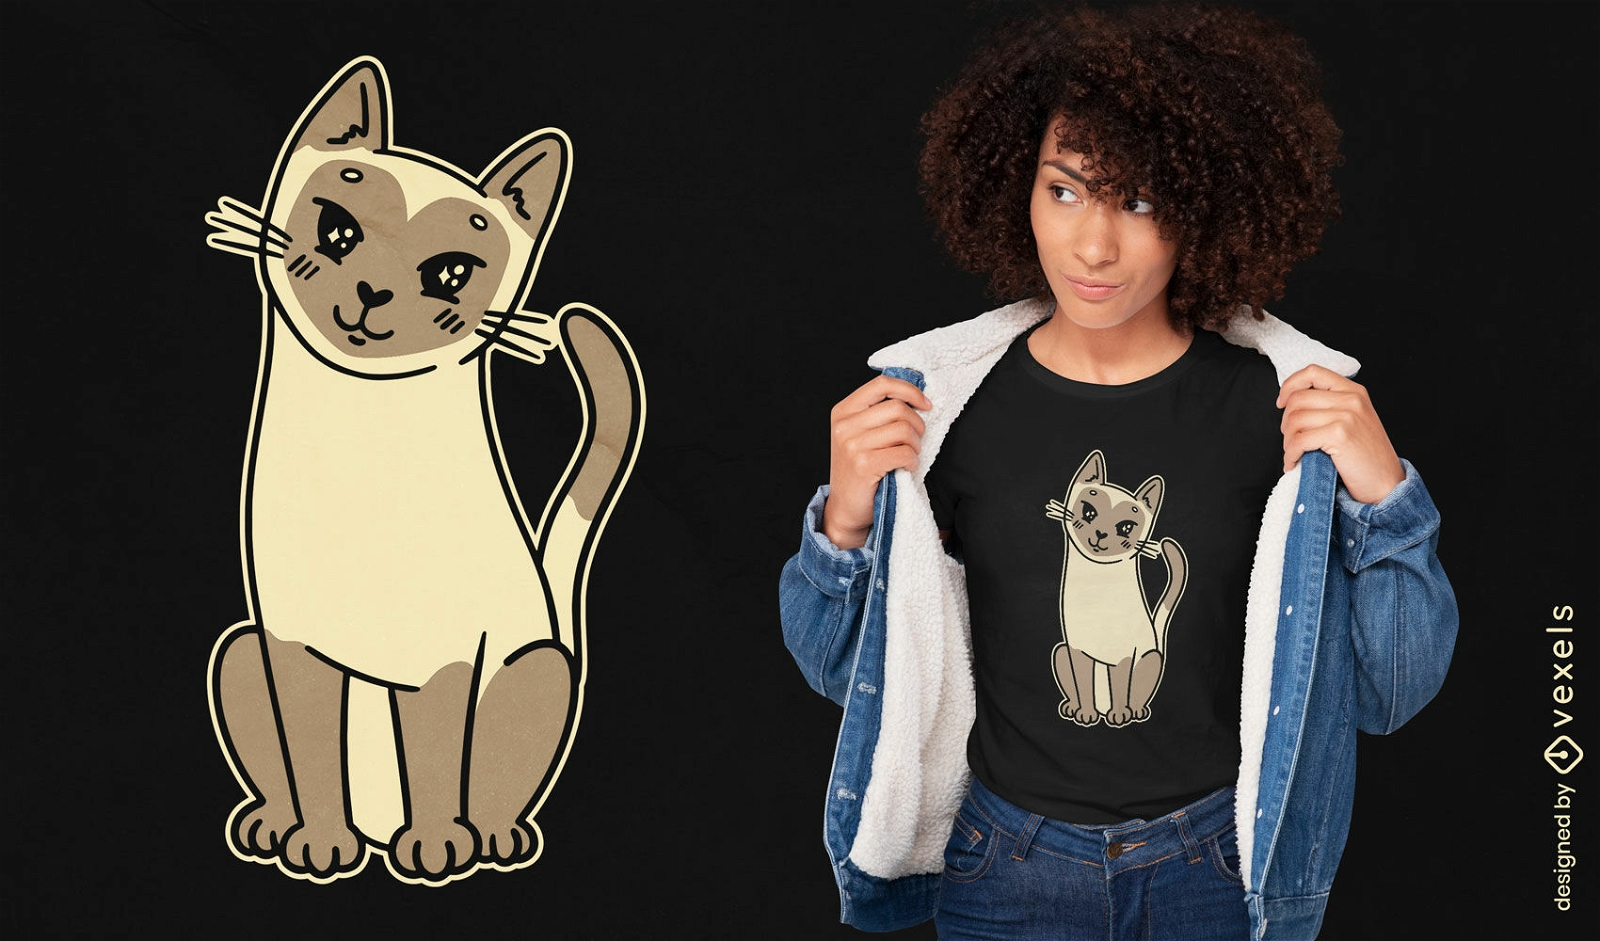 Niedlicher T-Shirt Entwurf der siamesischen Katze